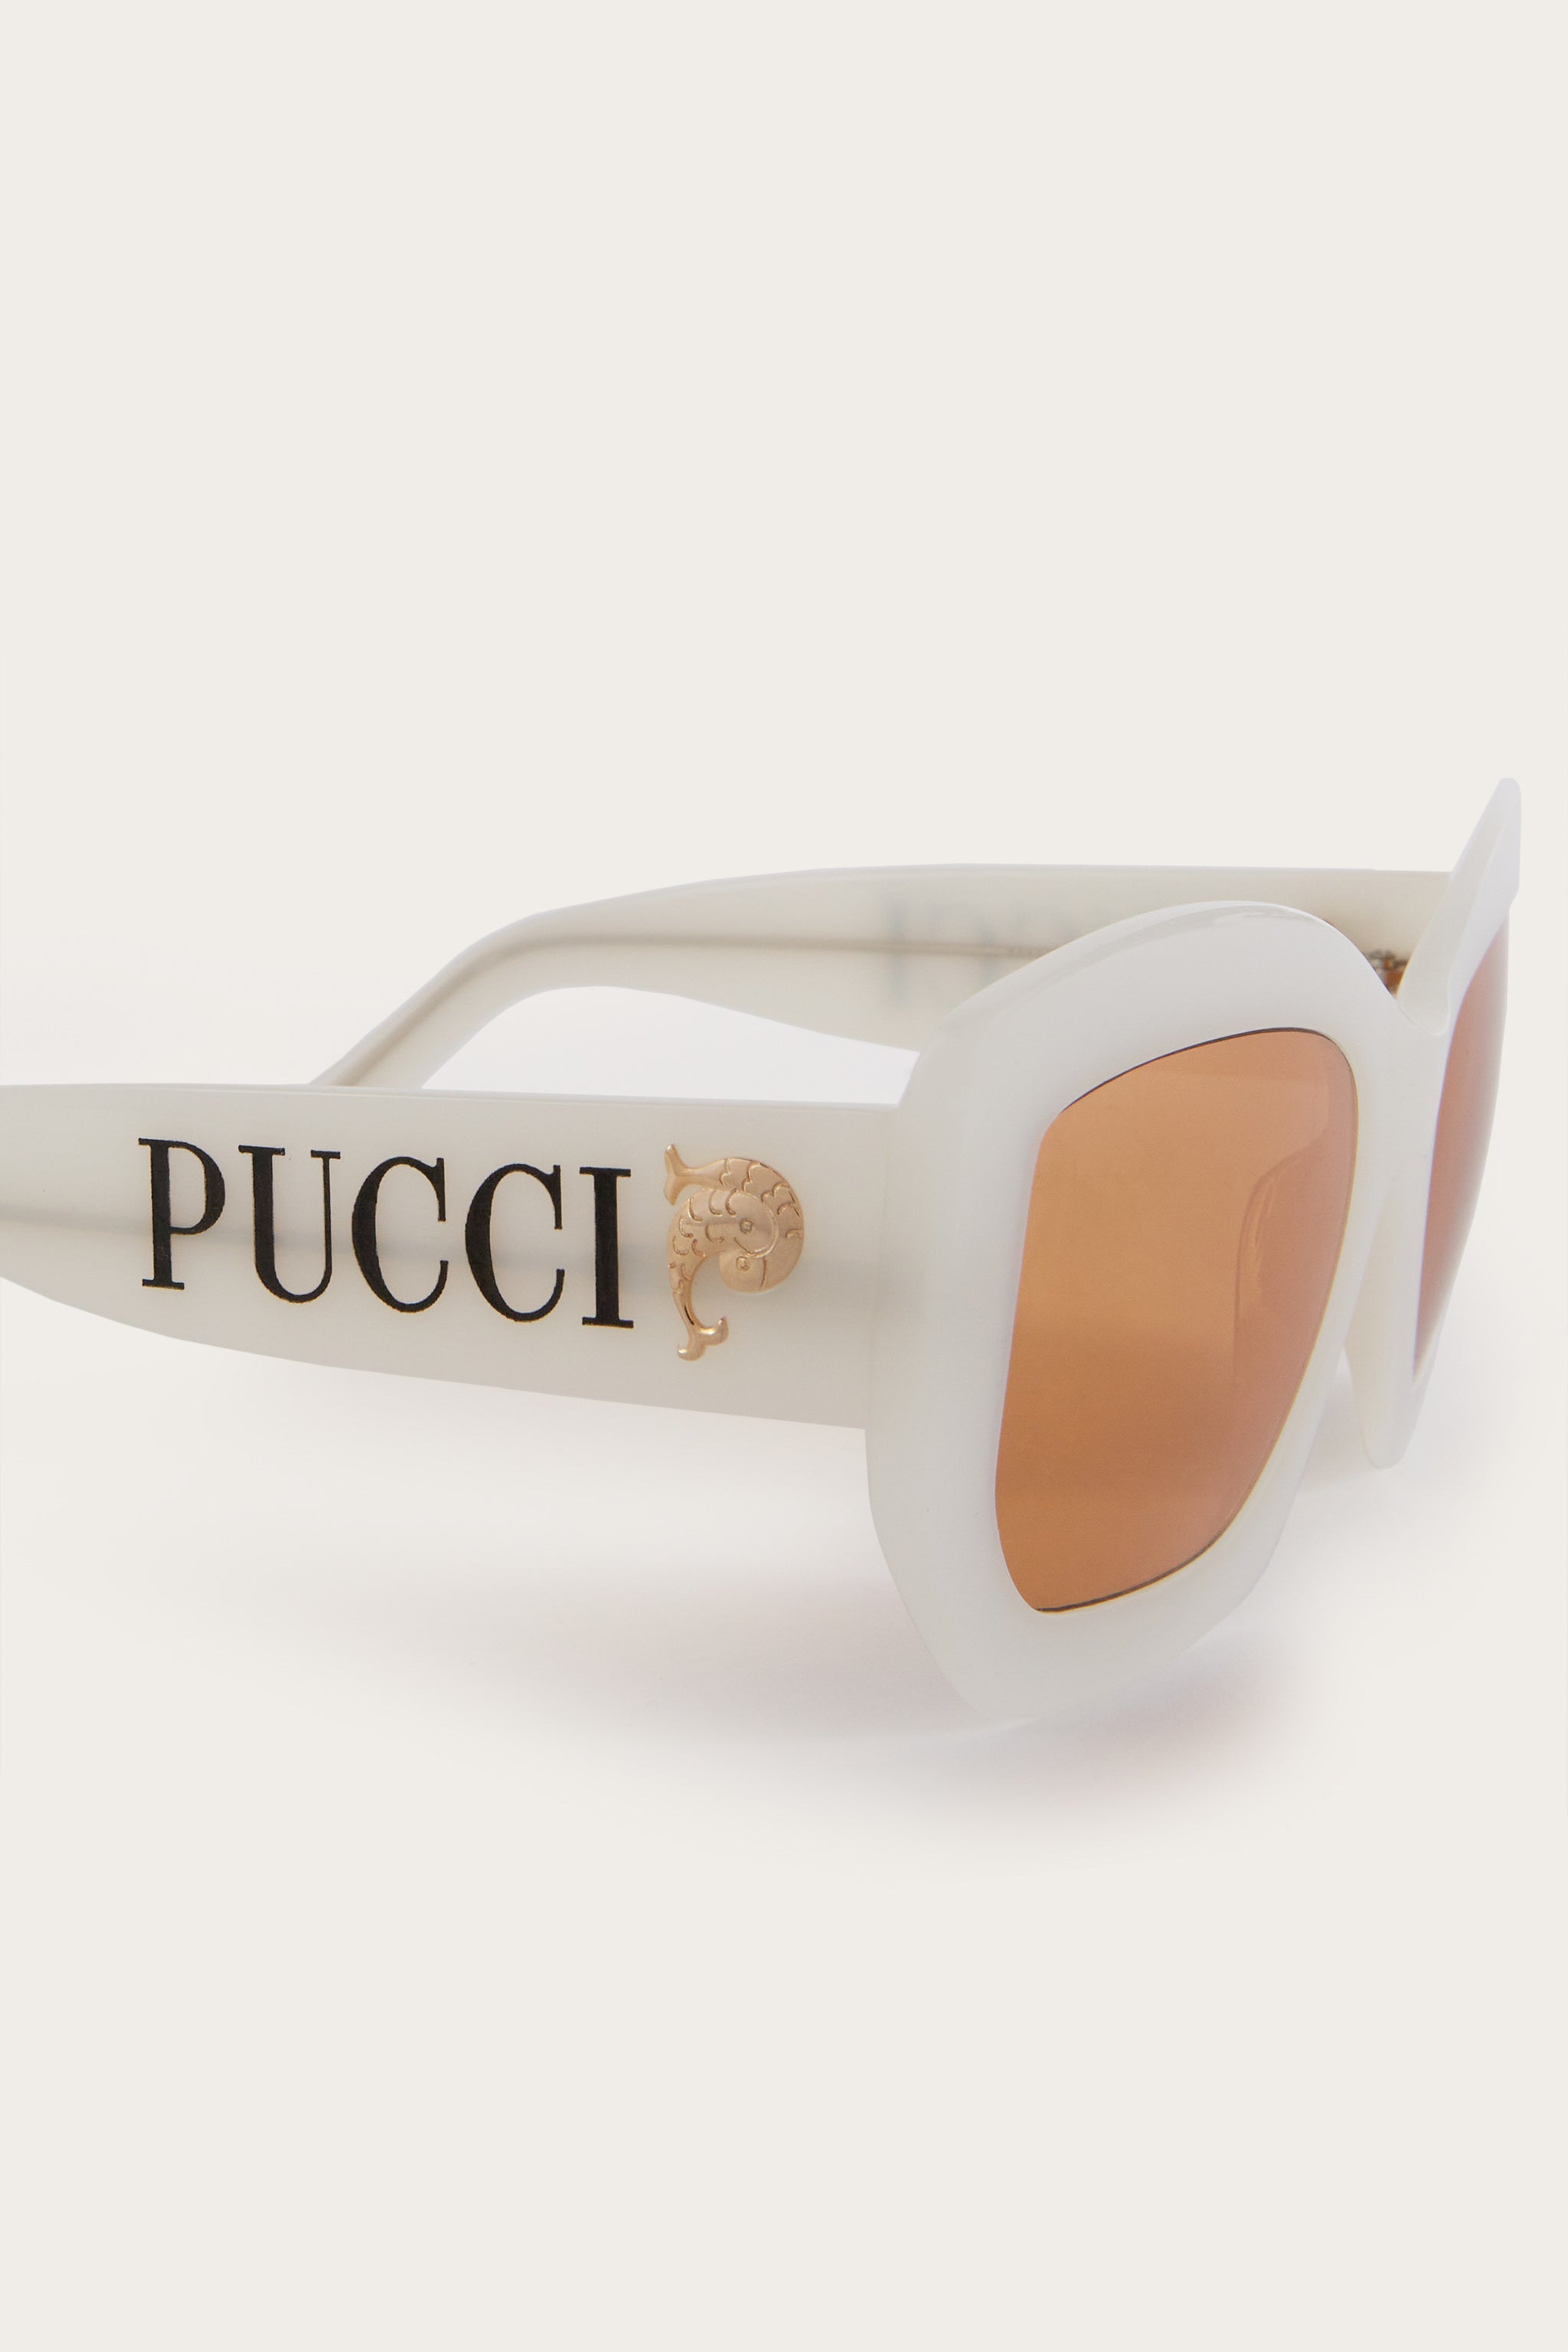 Pucci EP0198 56E Sunglasses - US